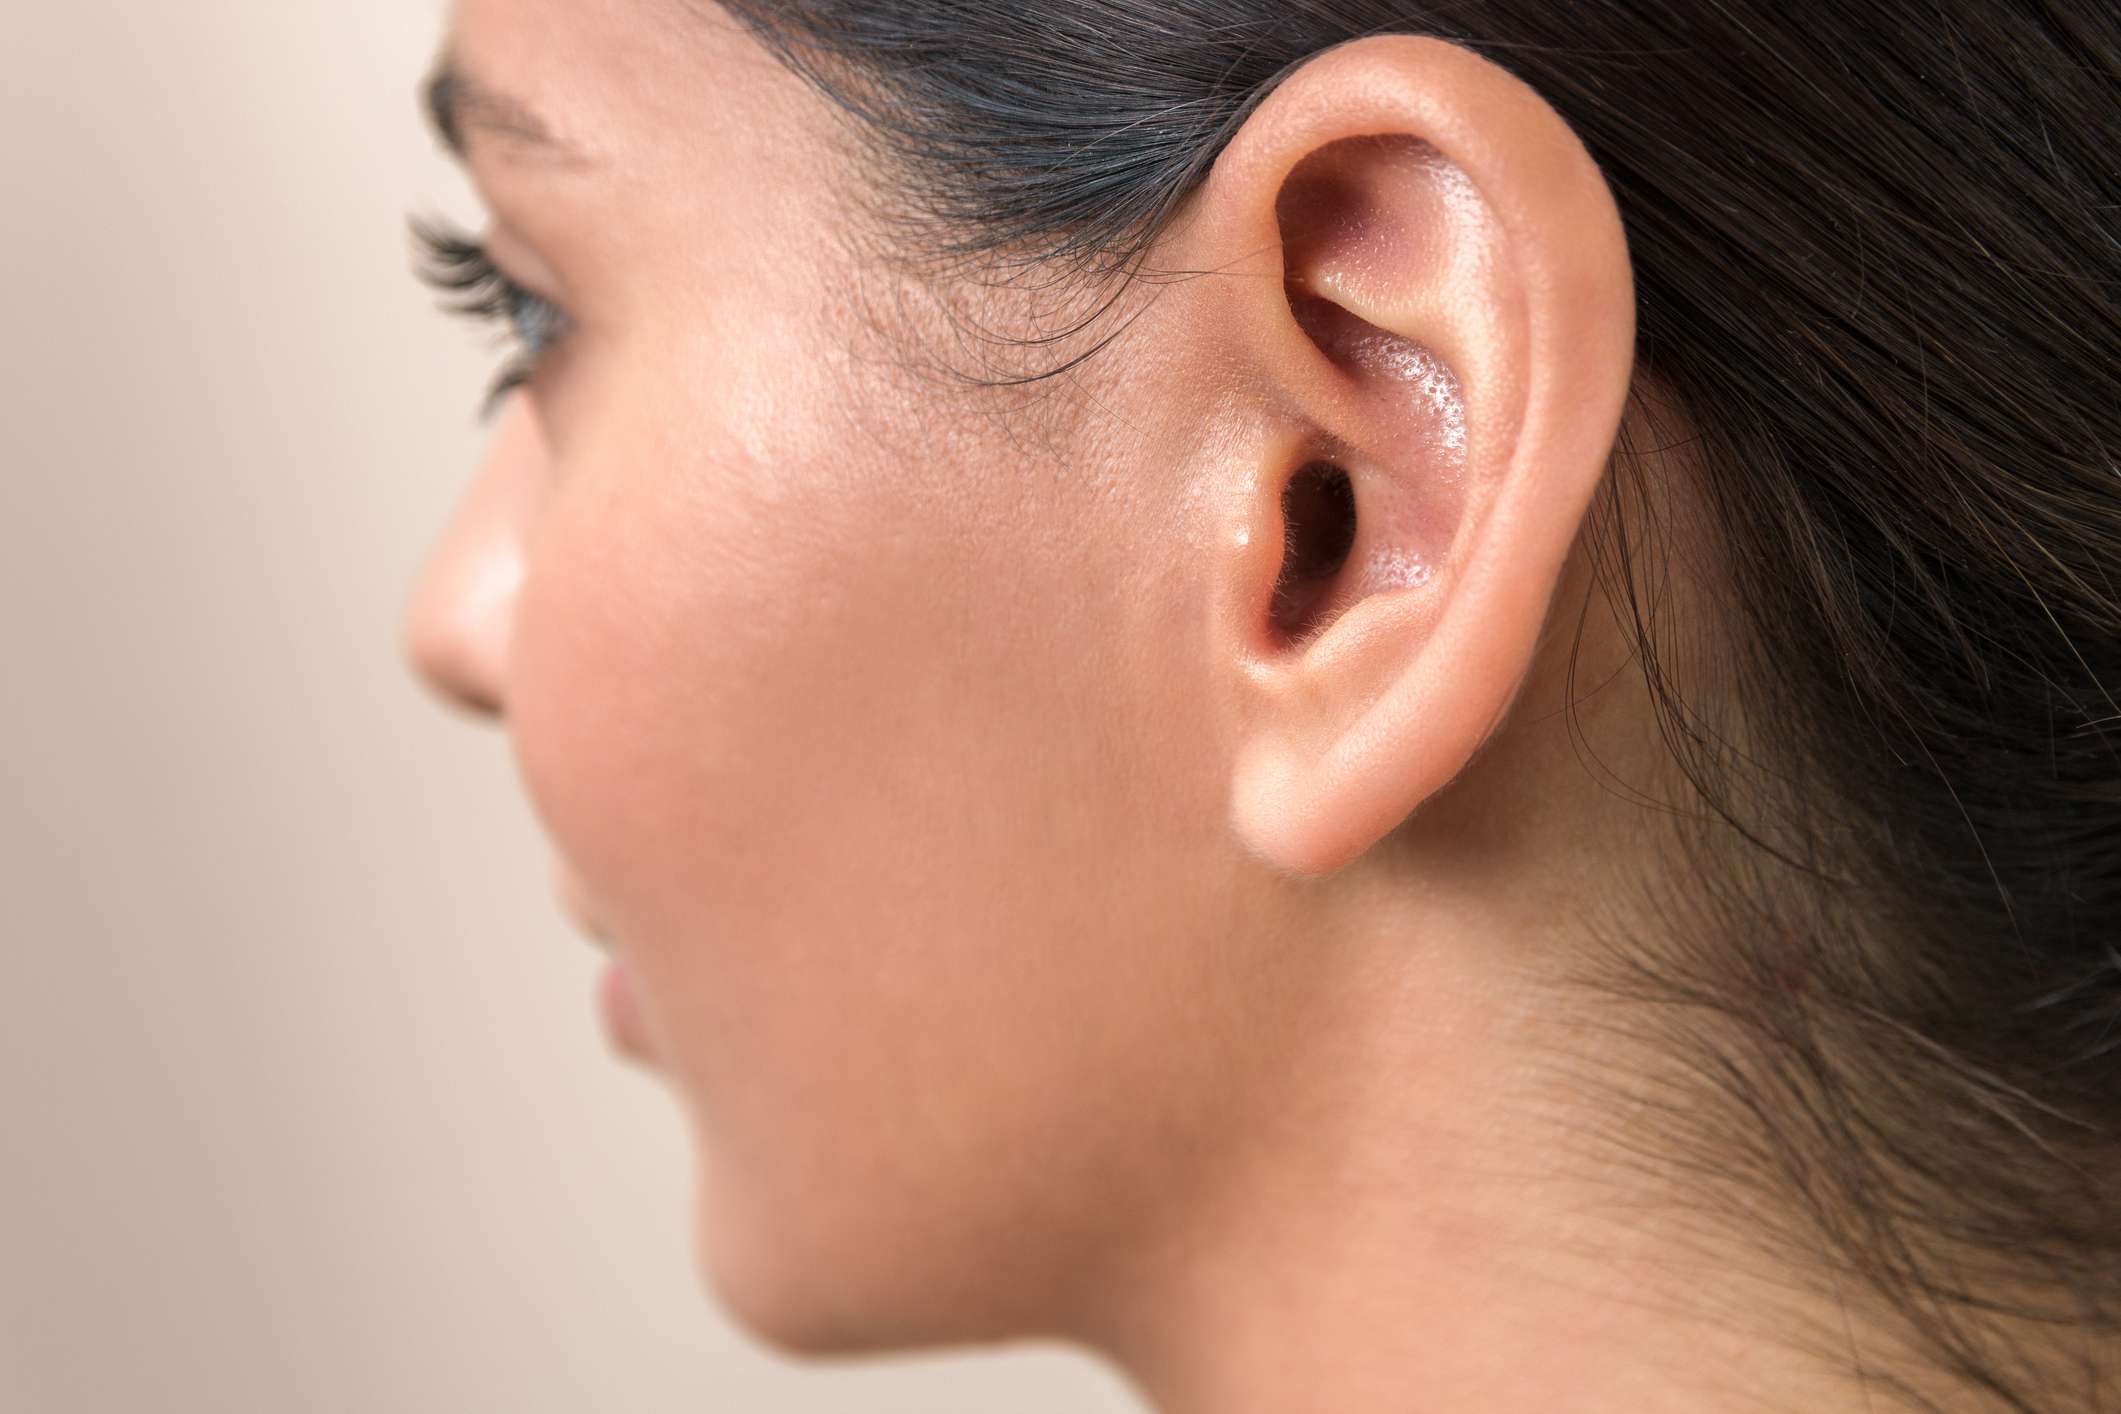 Ear surgery in Iran